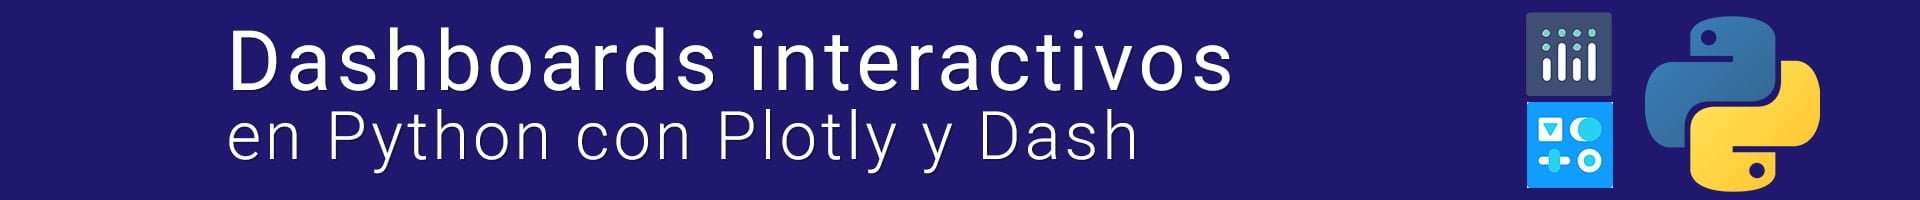 Curso Online Dashboards interactivos en Python con Plotly y Dash 